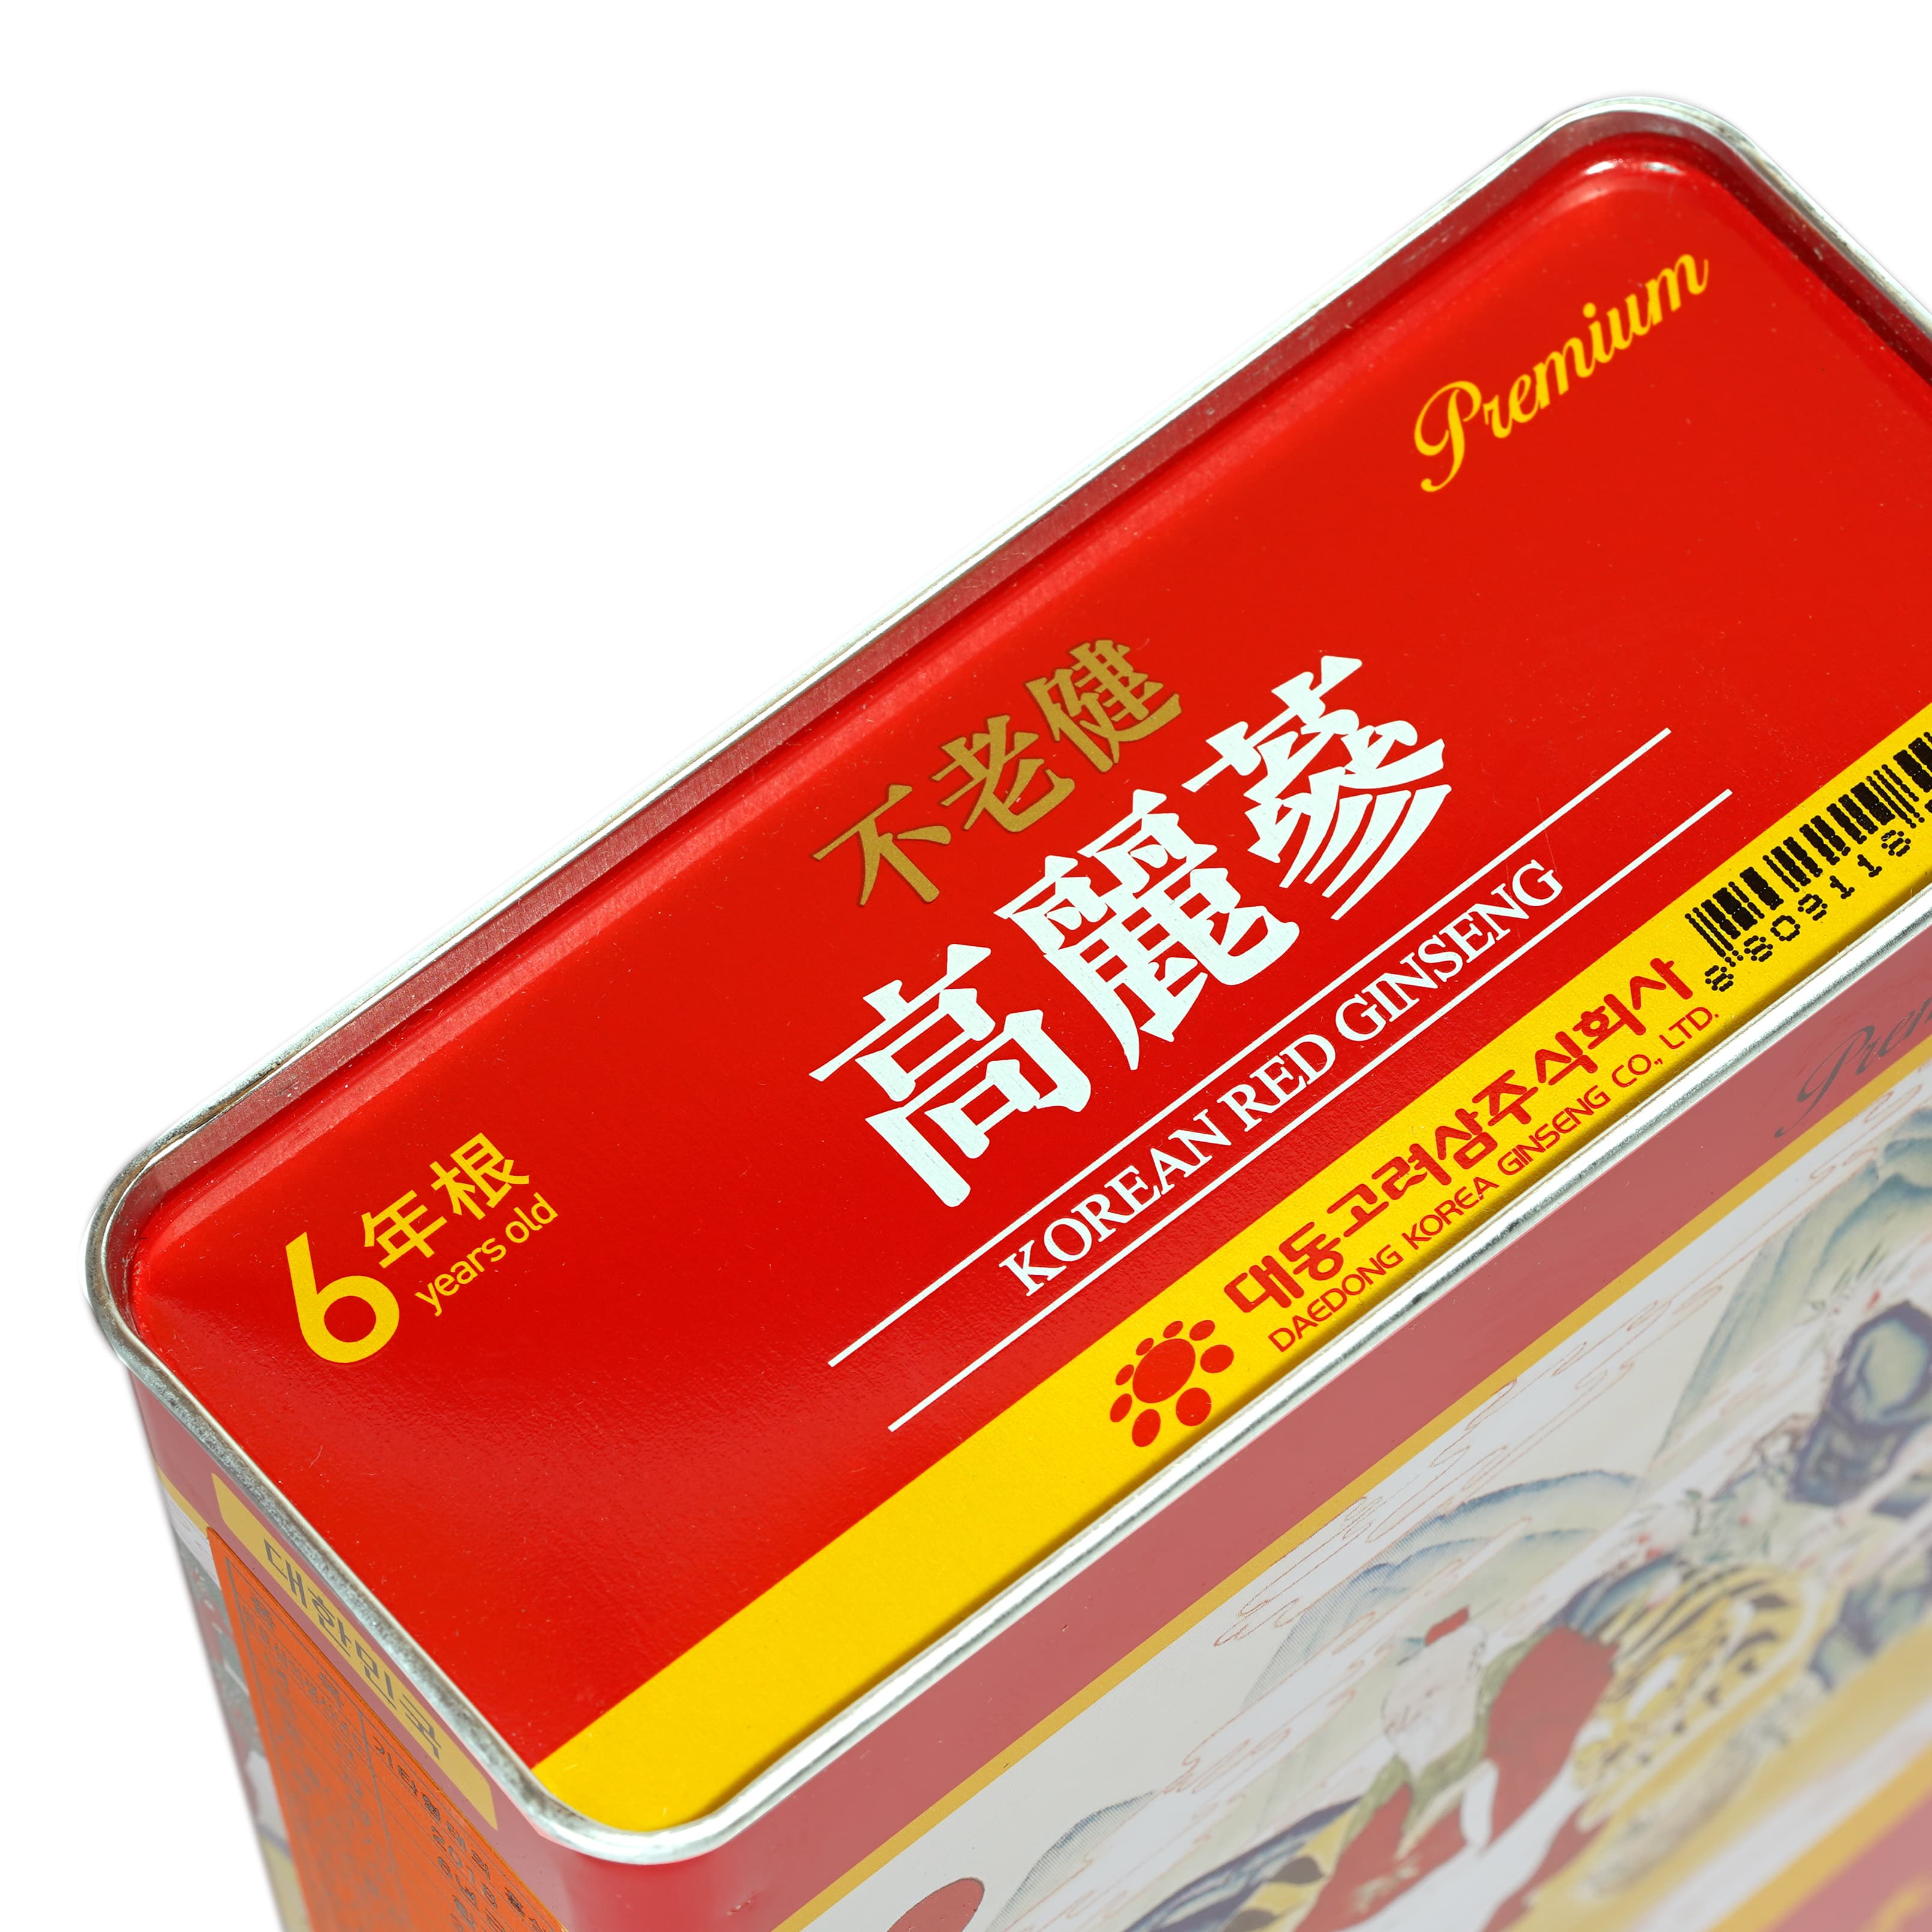 Hồng sâm củ khô Hàn Quốc Daedong Korea Ginseng 300g dòng Premium củ nhỏ (11 -20 củ) - Tăng cường trí nhớ, hỗ trợ giảm mỡ máu, phòng ngừa tiểu đường, huyết áp